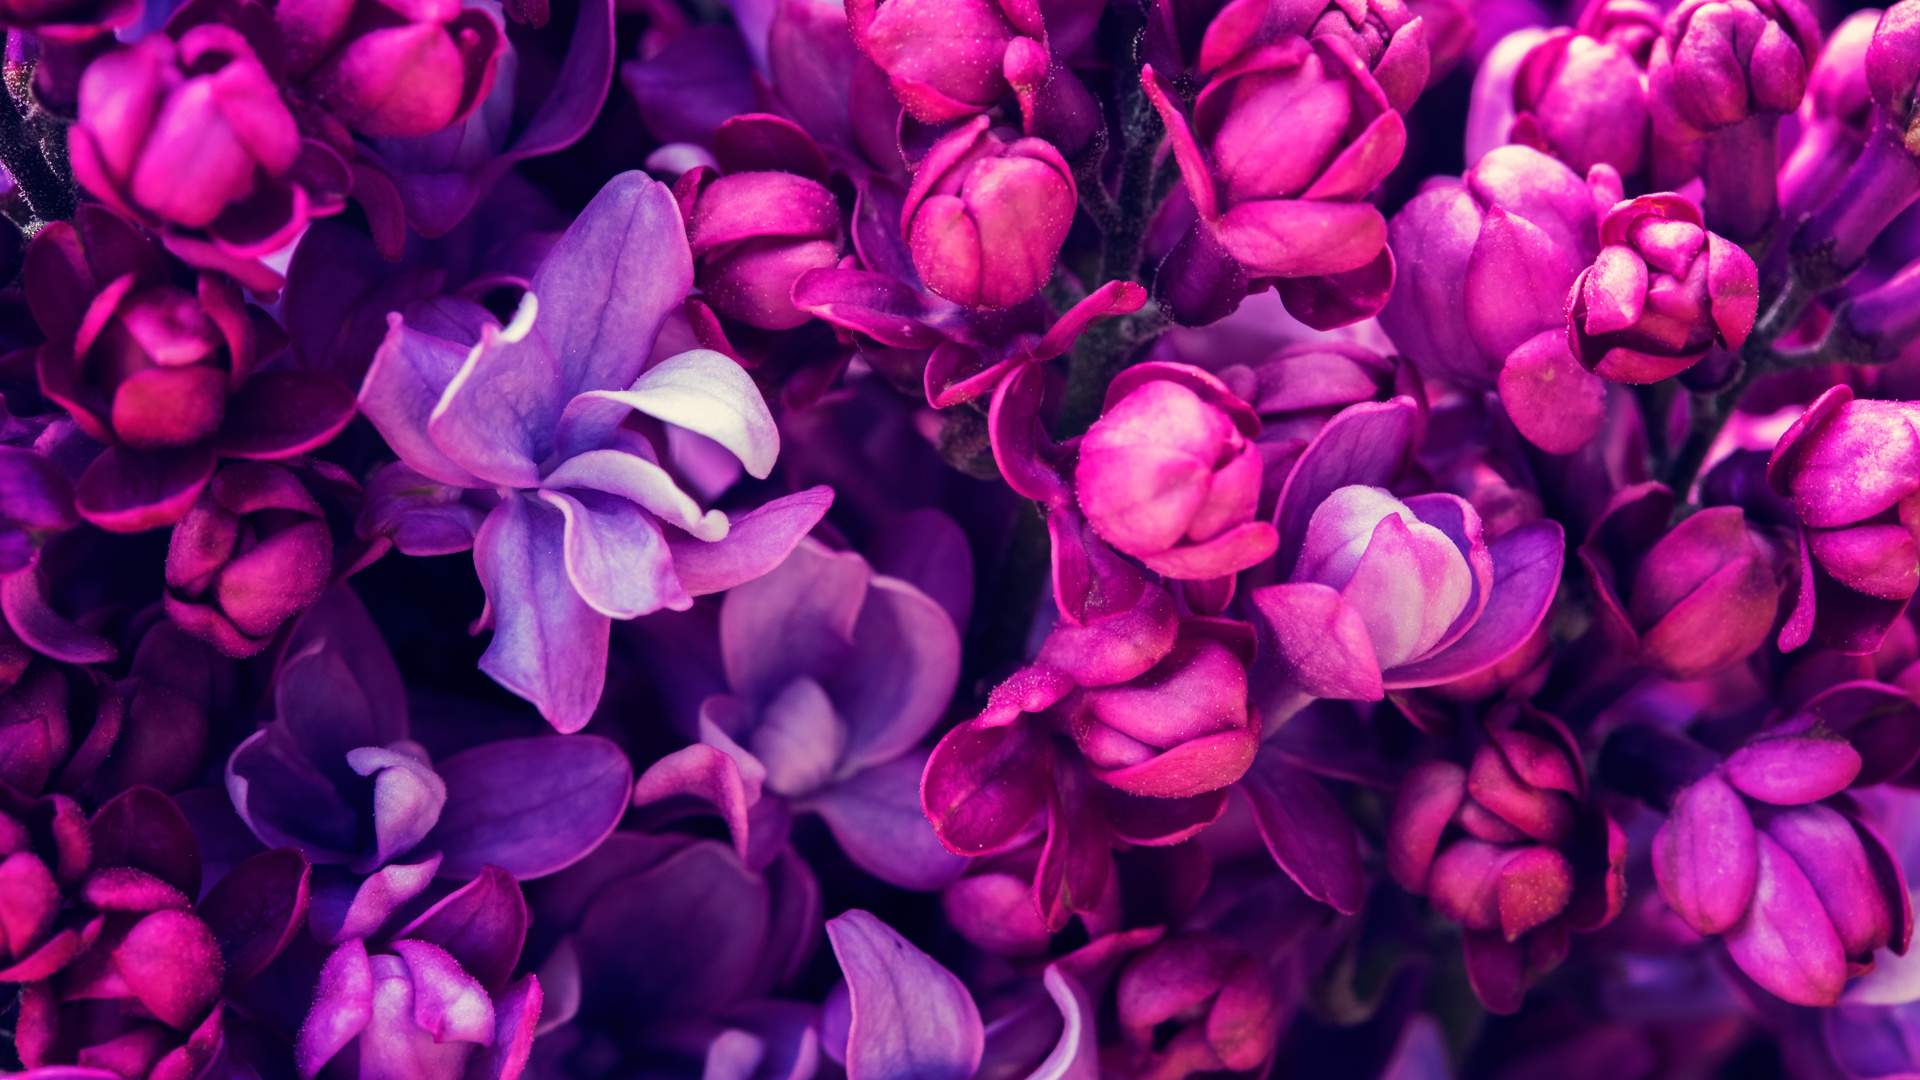 Fleurs Violettes en Macro Shot. Wallpaper in 1920x1080 Resolution